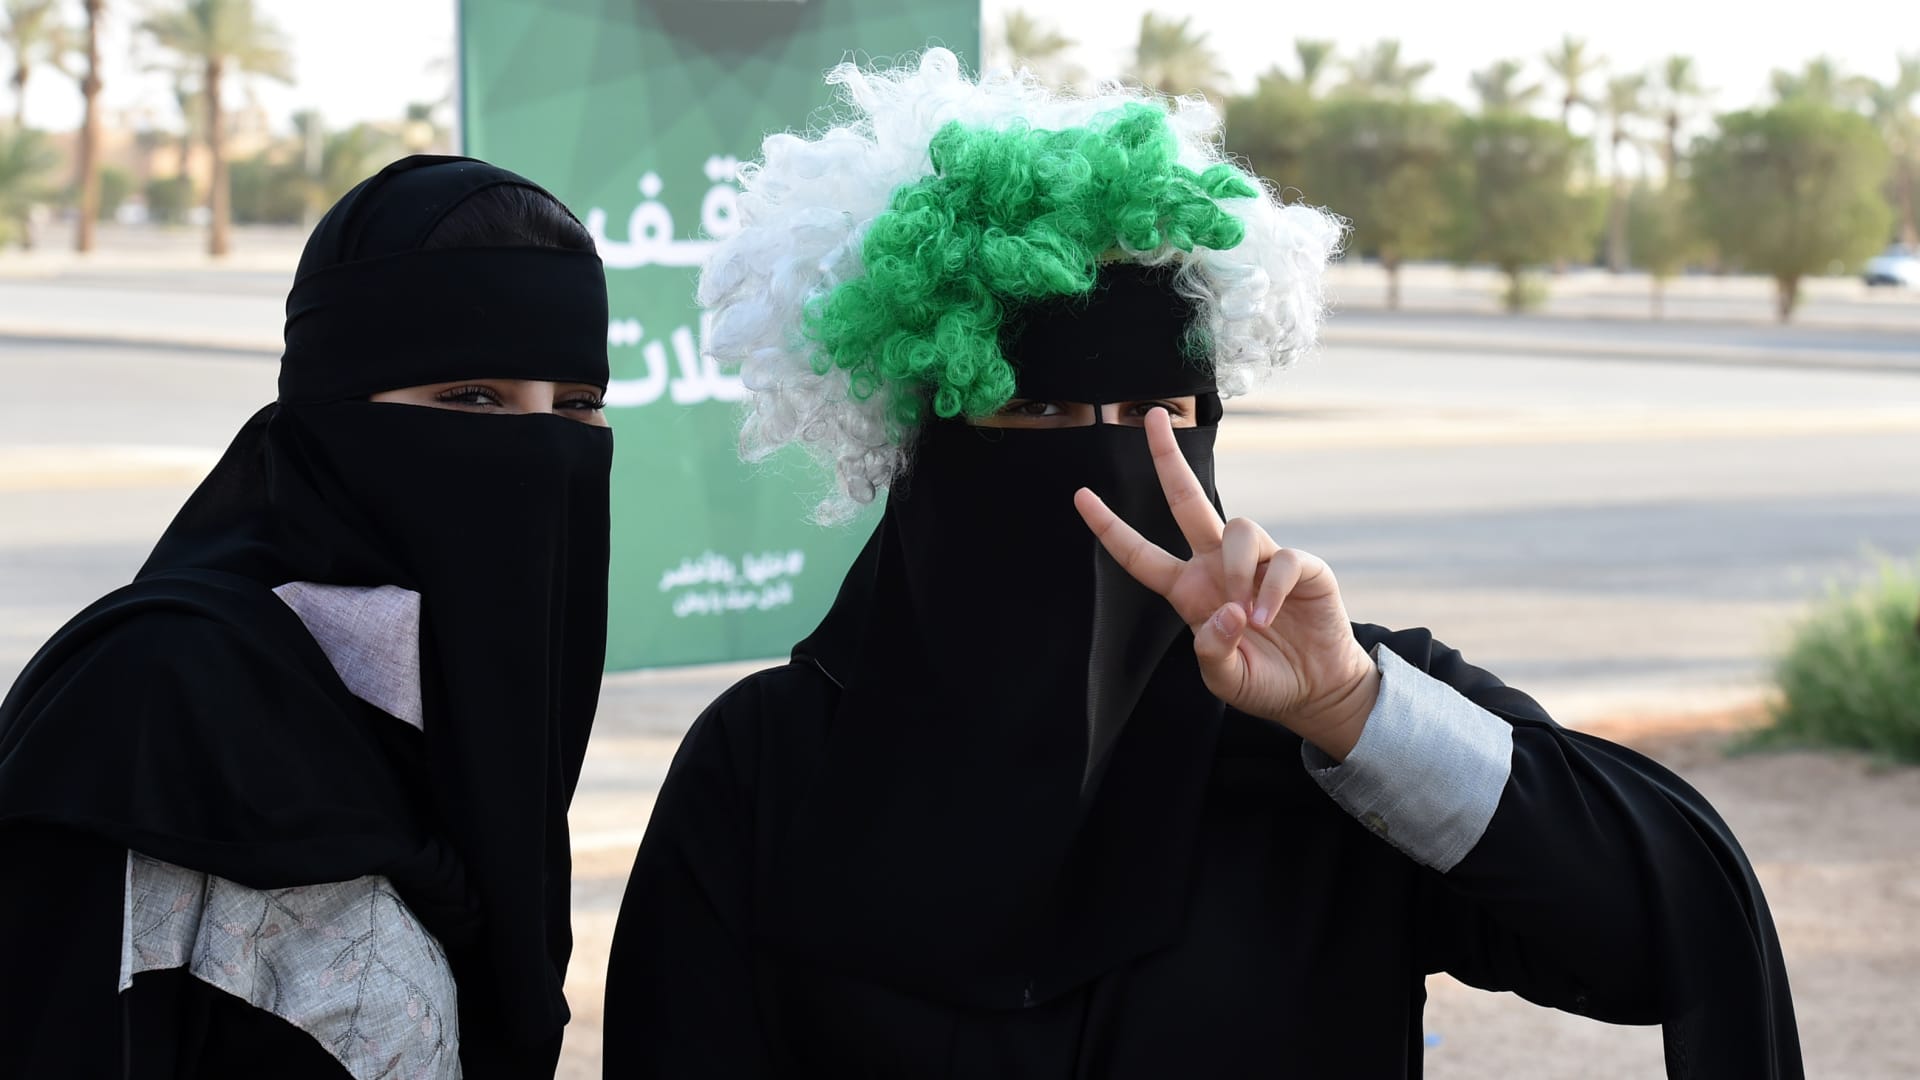 السعودية.. تحذير من ارتكاب جريمة التحرش قبل أيام قليلة من اليوم الوطني